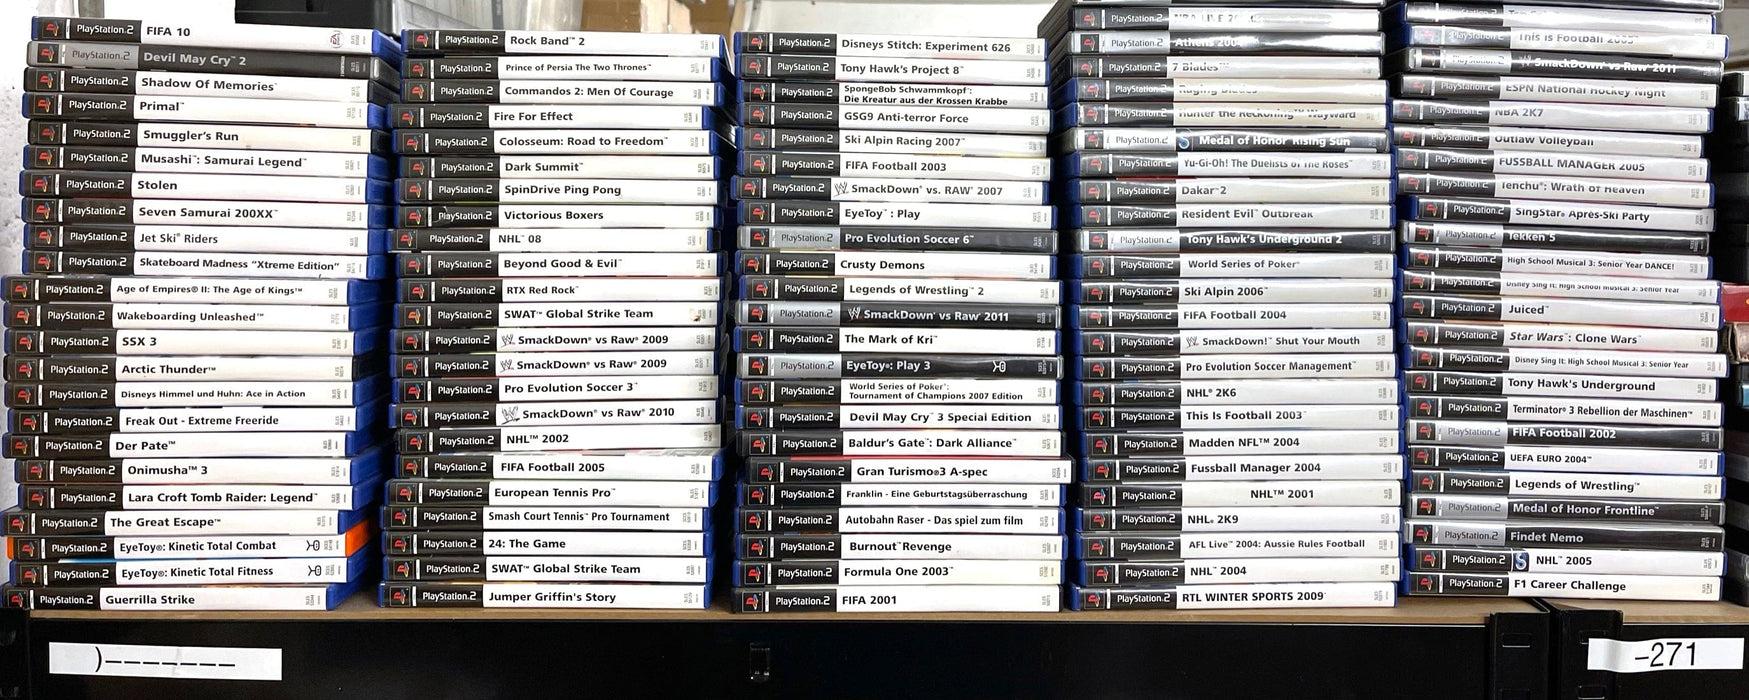 Glaciergames PlayStation 2 Game Medal of Honor: Frontline PlayStation 2 (Nr.409)